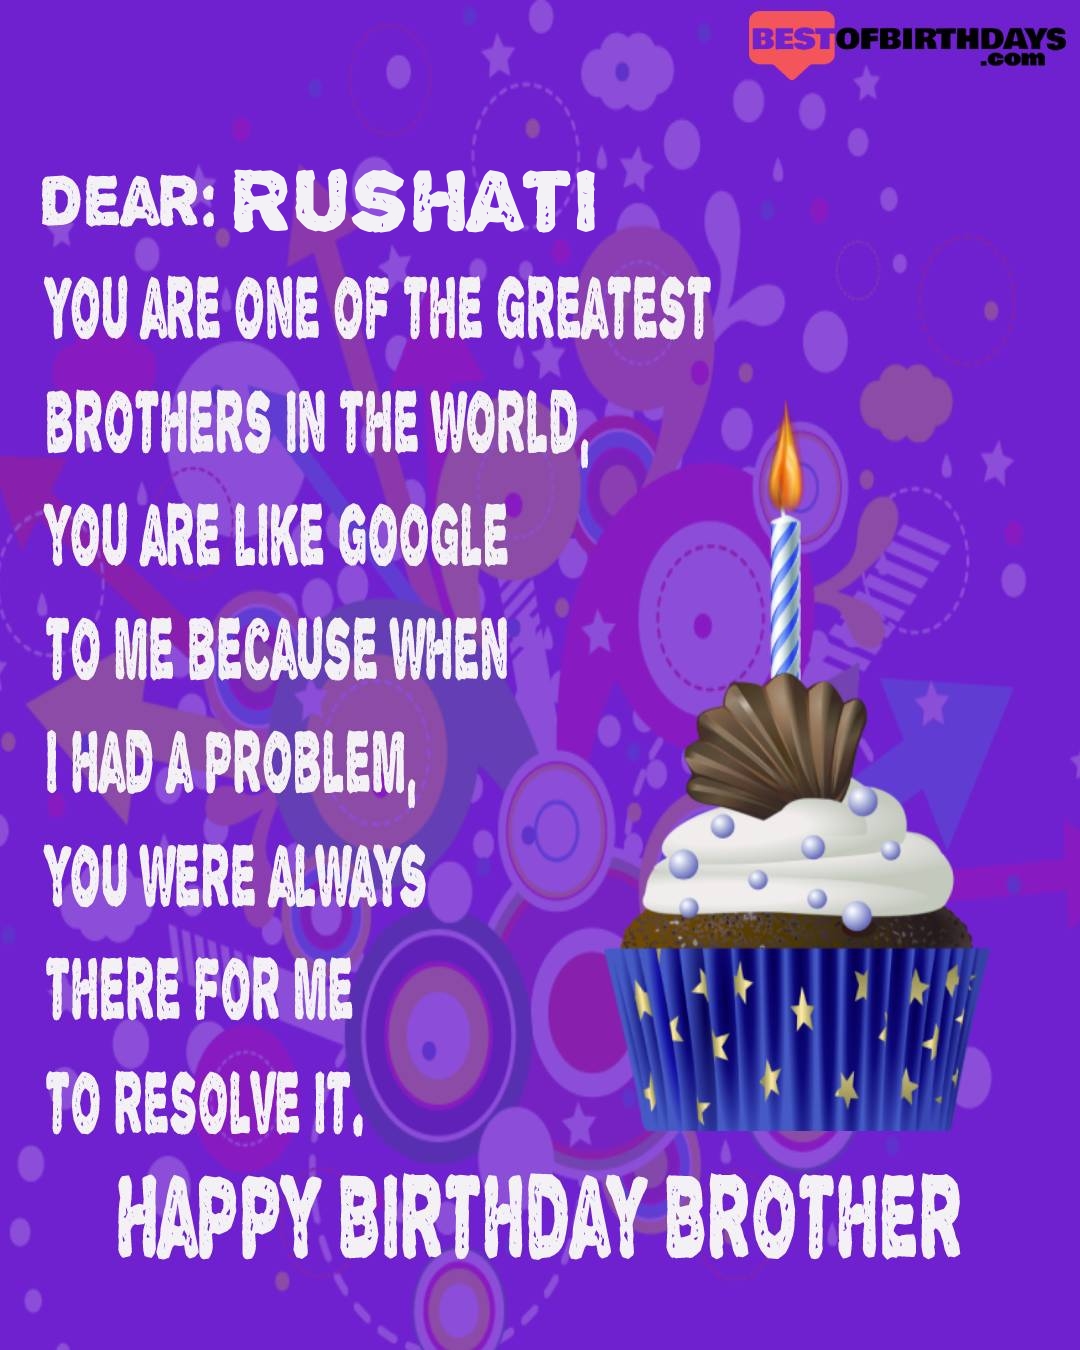 Happy birthday rushati bhai brother bro